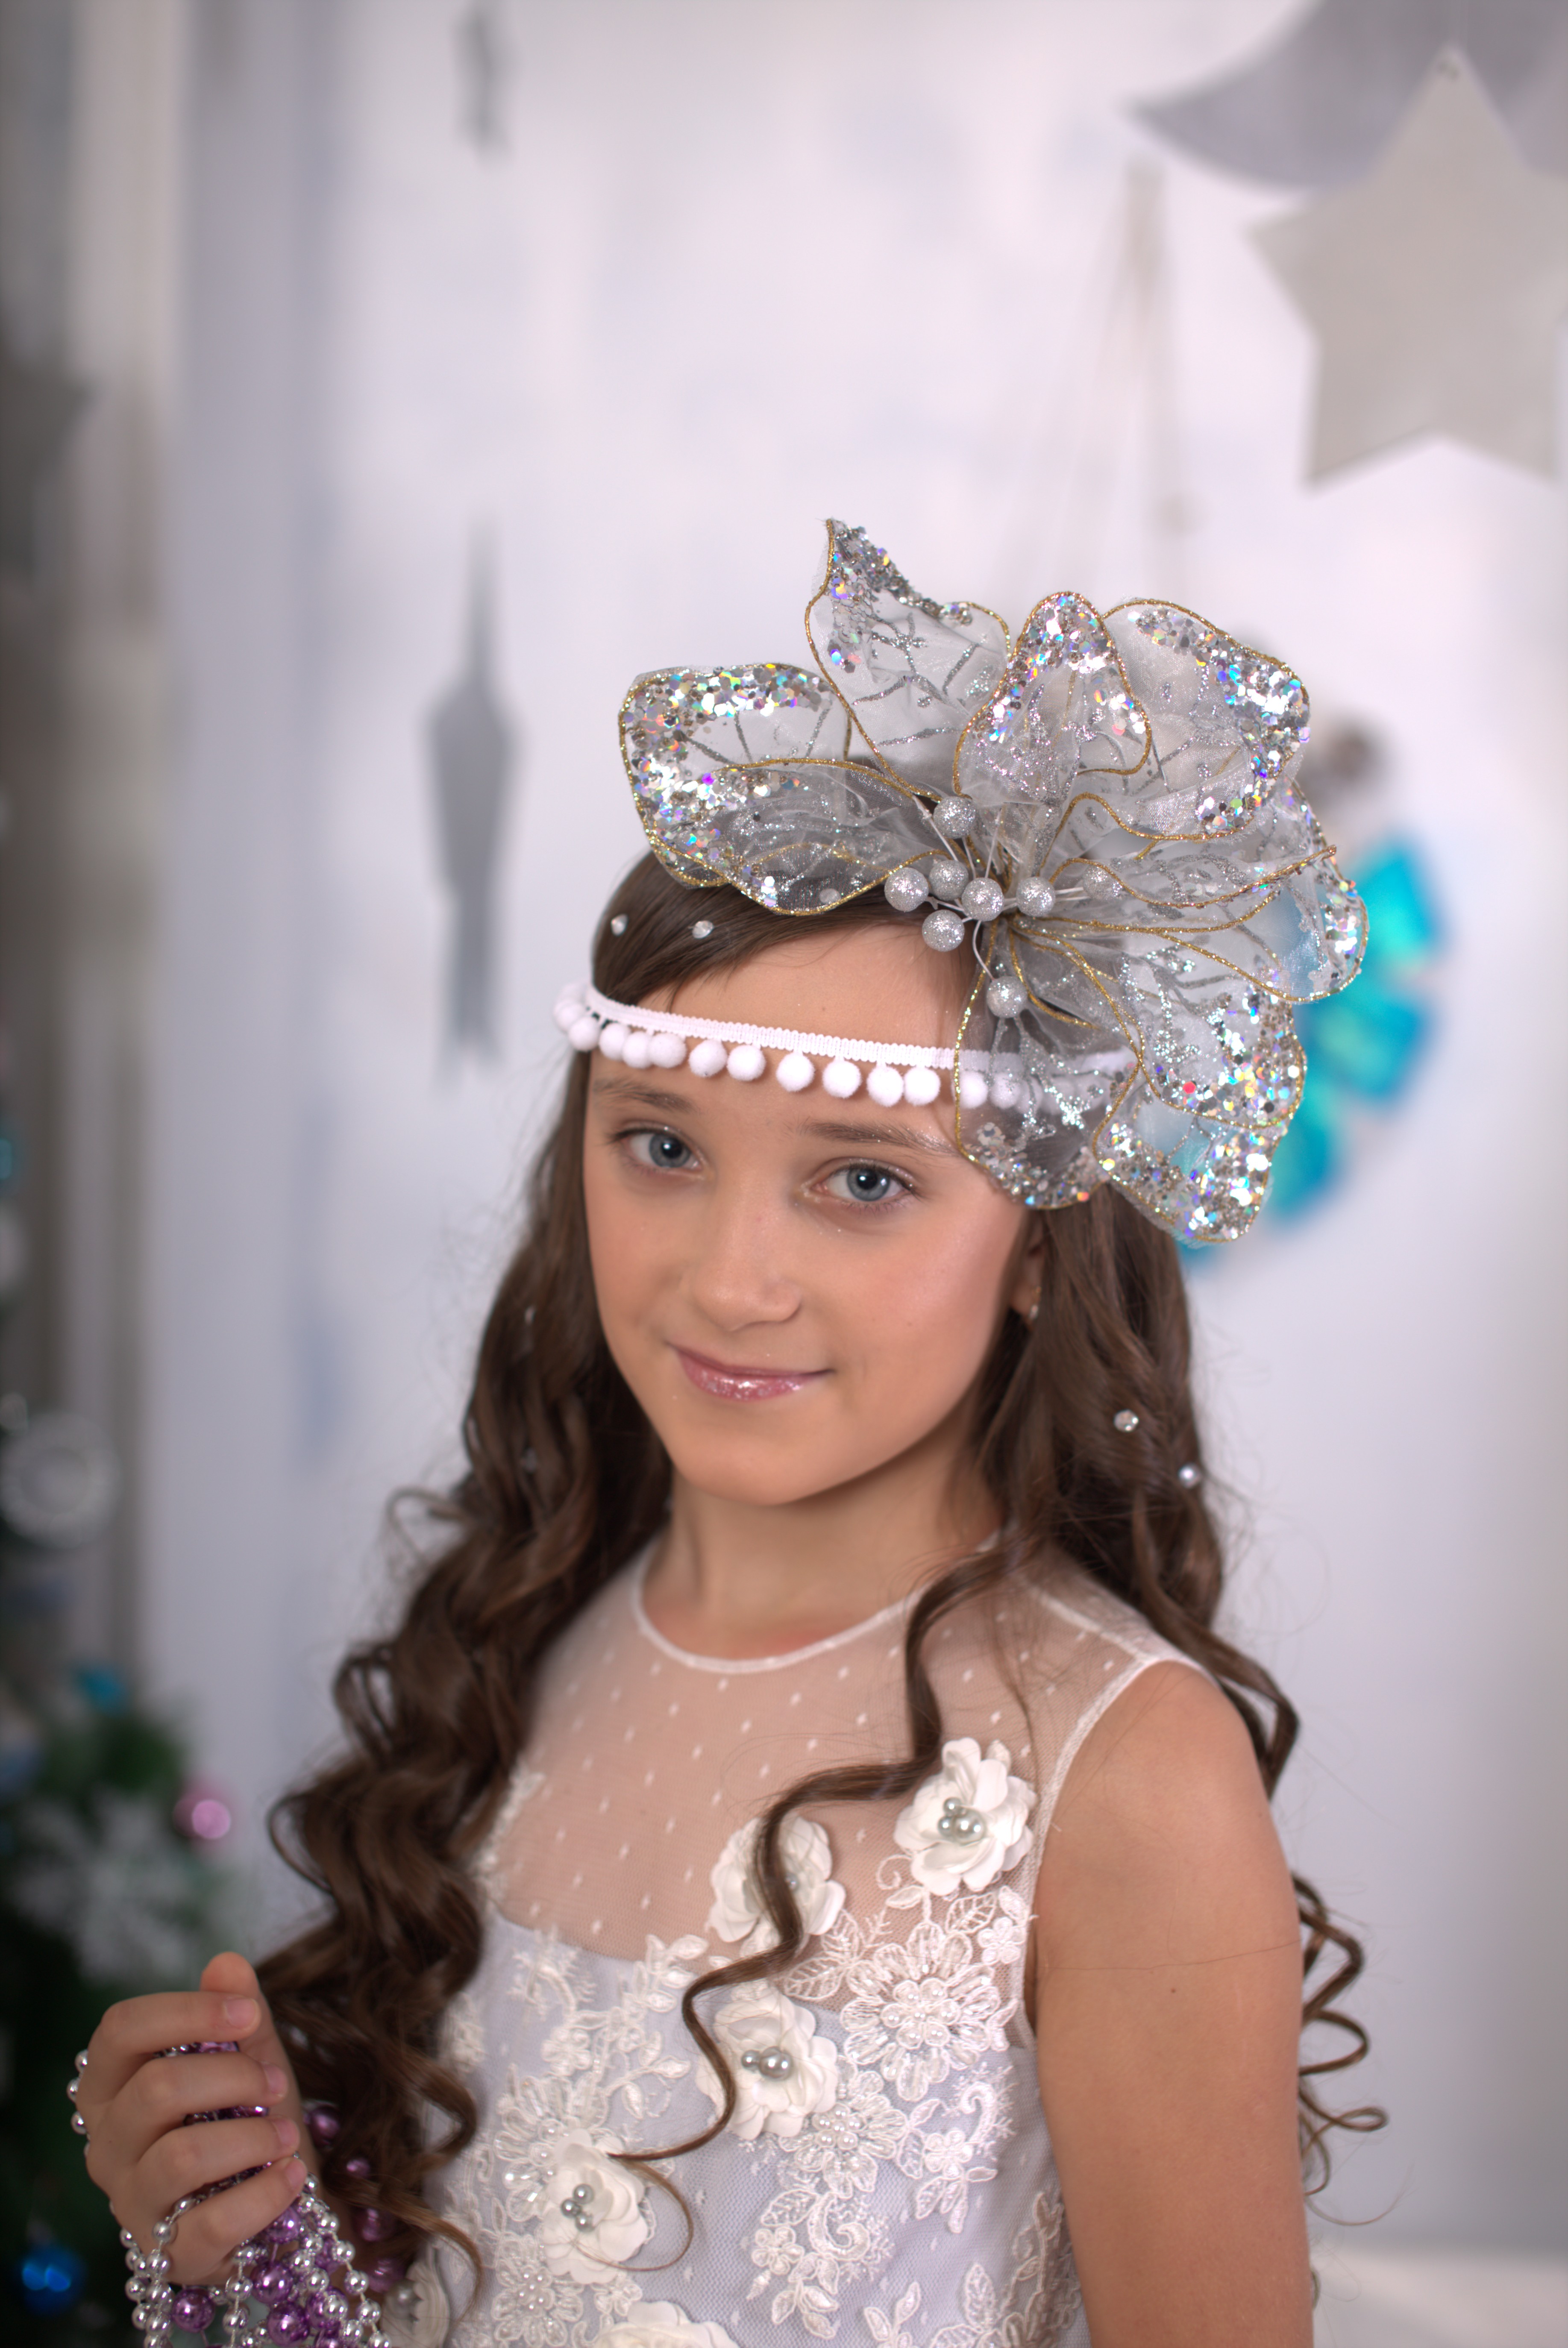 Елизавета Петрова - аккредитованная модель для участия в подиумных показах на Междунродной Детской Неделе моды